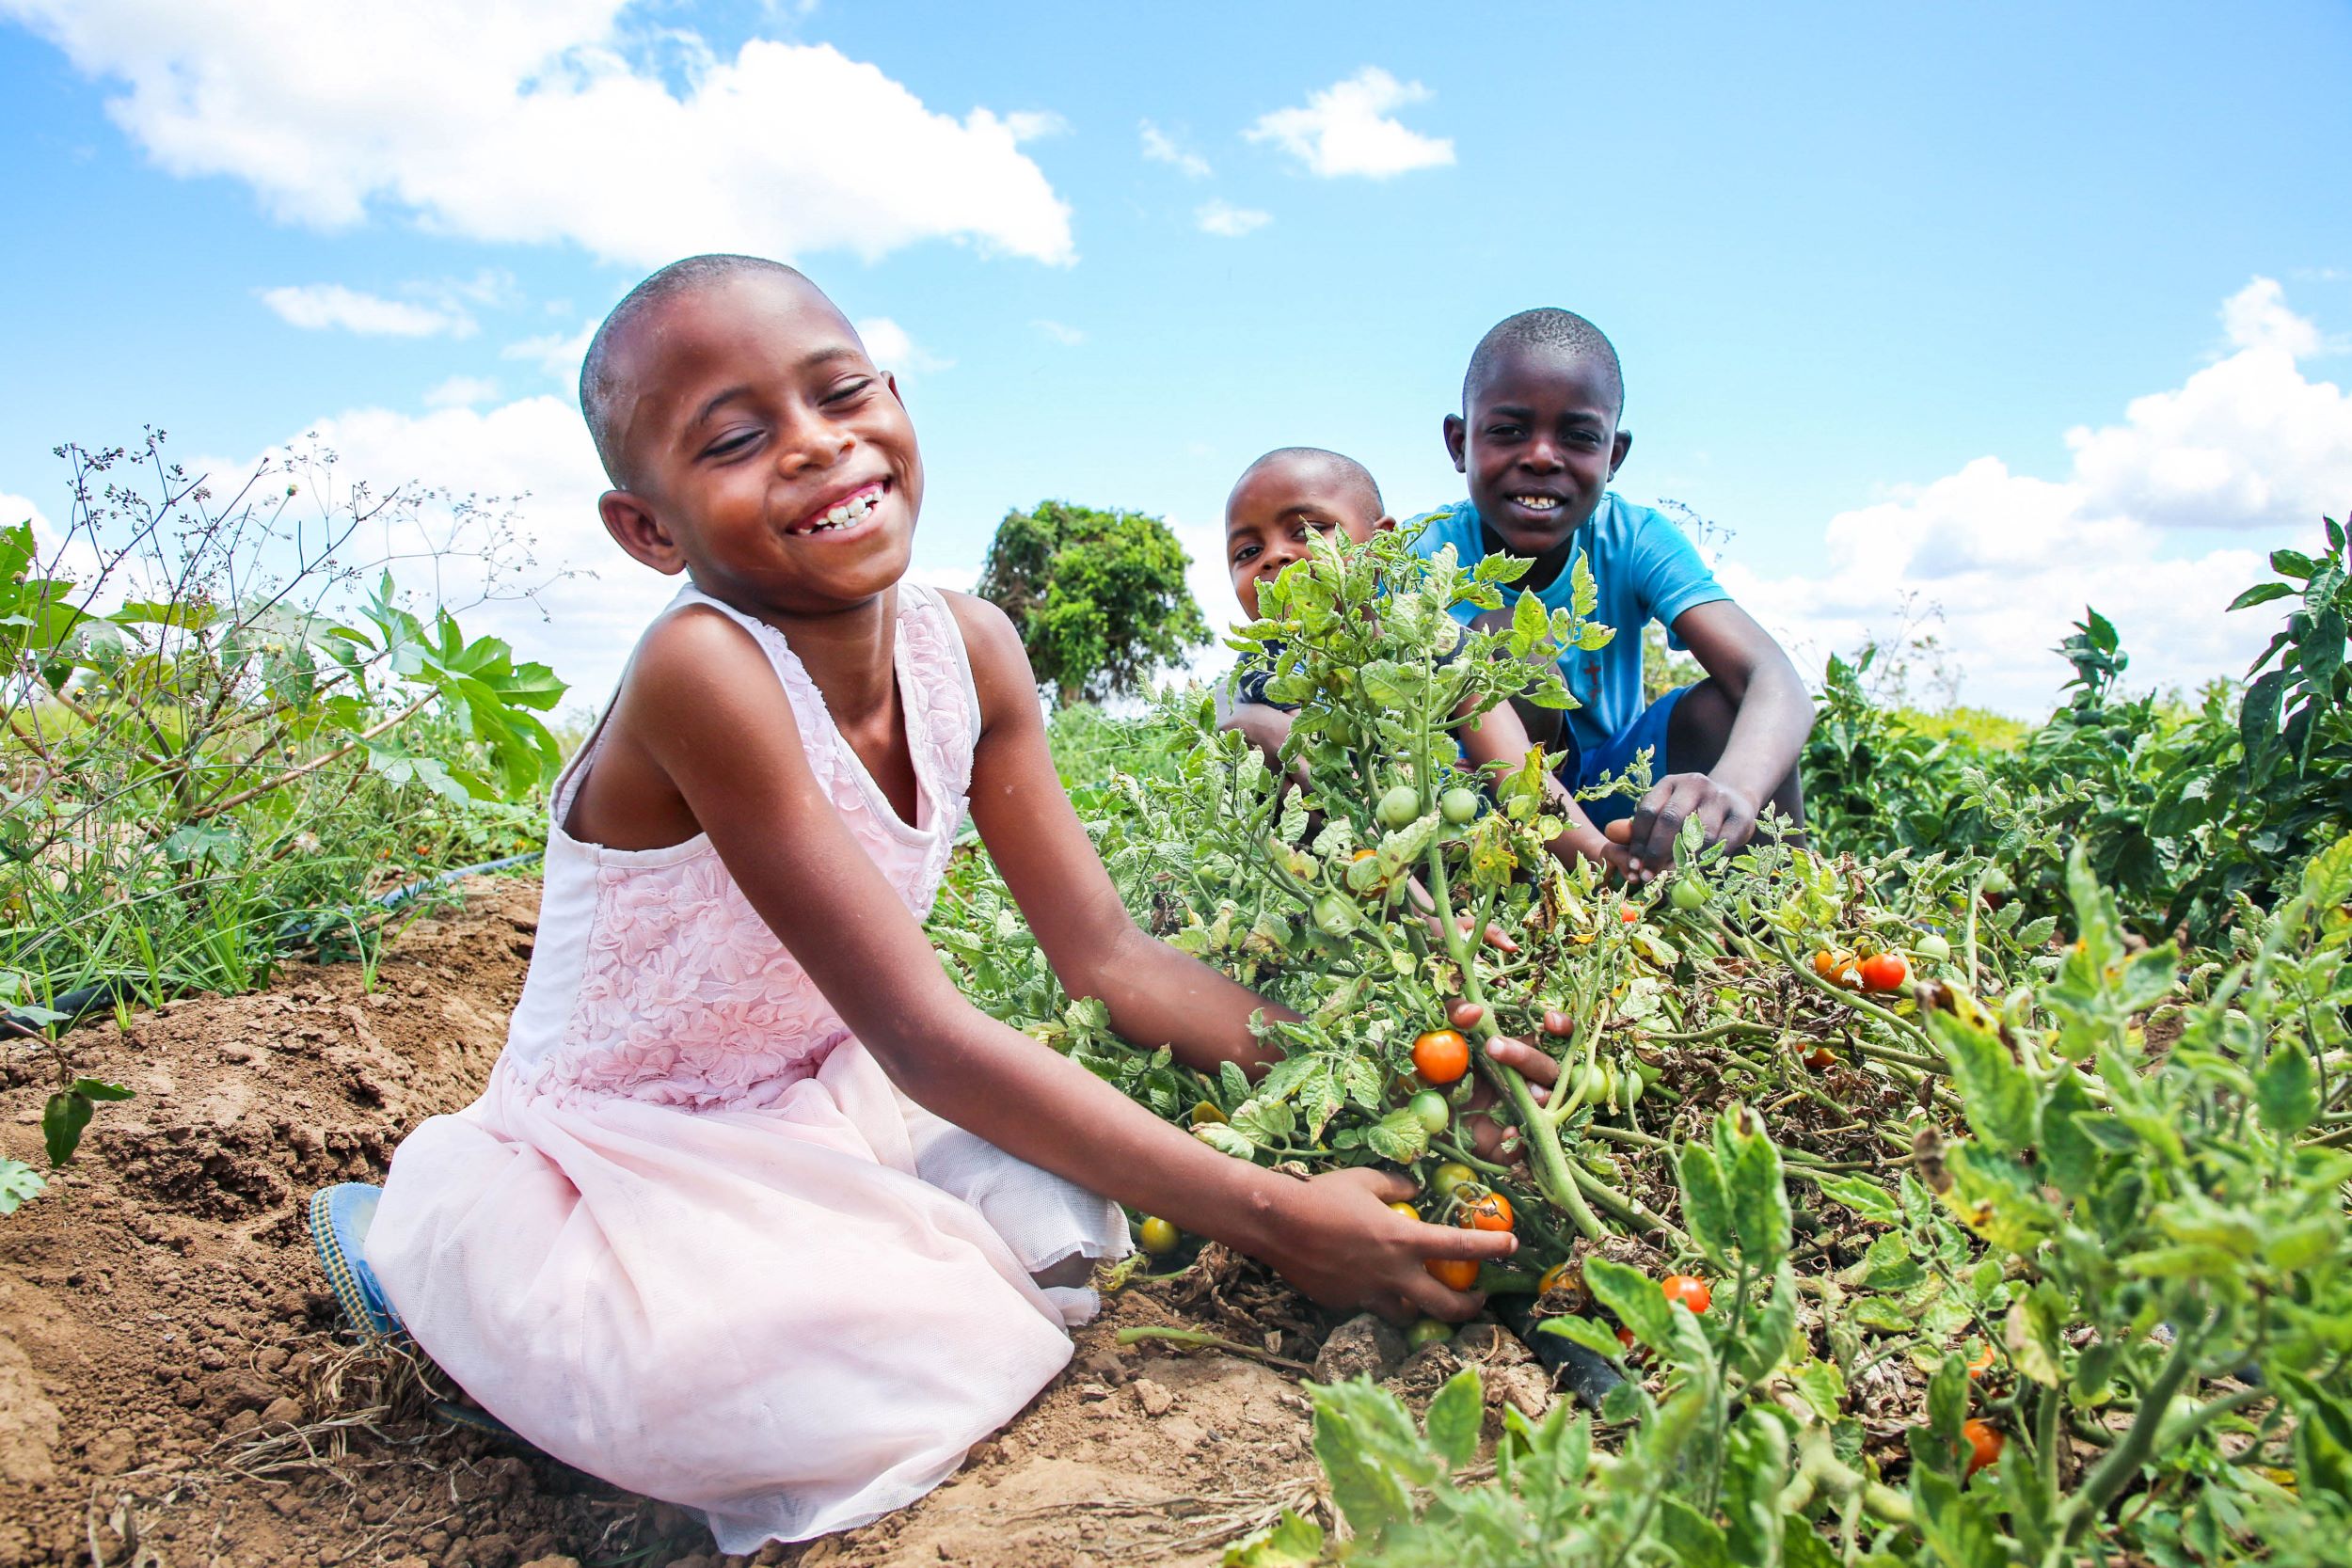 Kenyan girl enjoys harvesting tomatoes